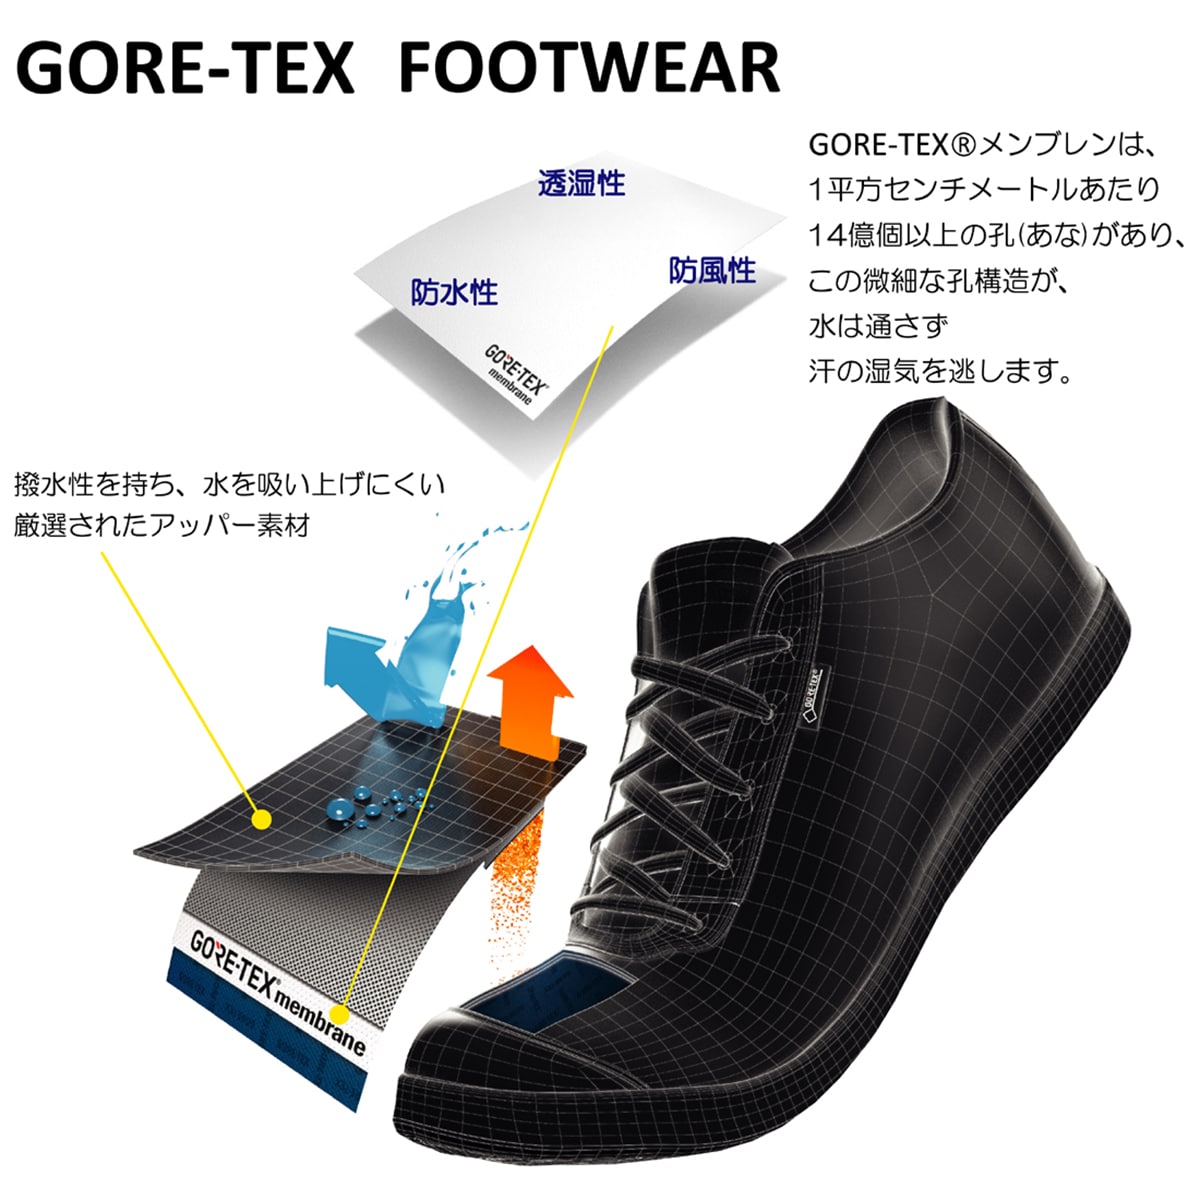 【GORE-TEX】 マドラスウォーク madras Walk ゴアテックス フットウェア 幅広ラウンドトウのストレートチップ MW5904 BLACK 25.0